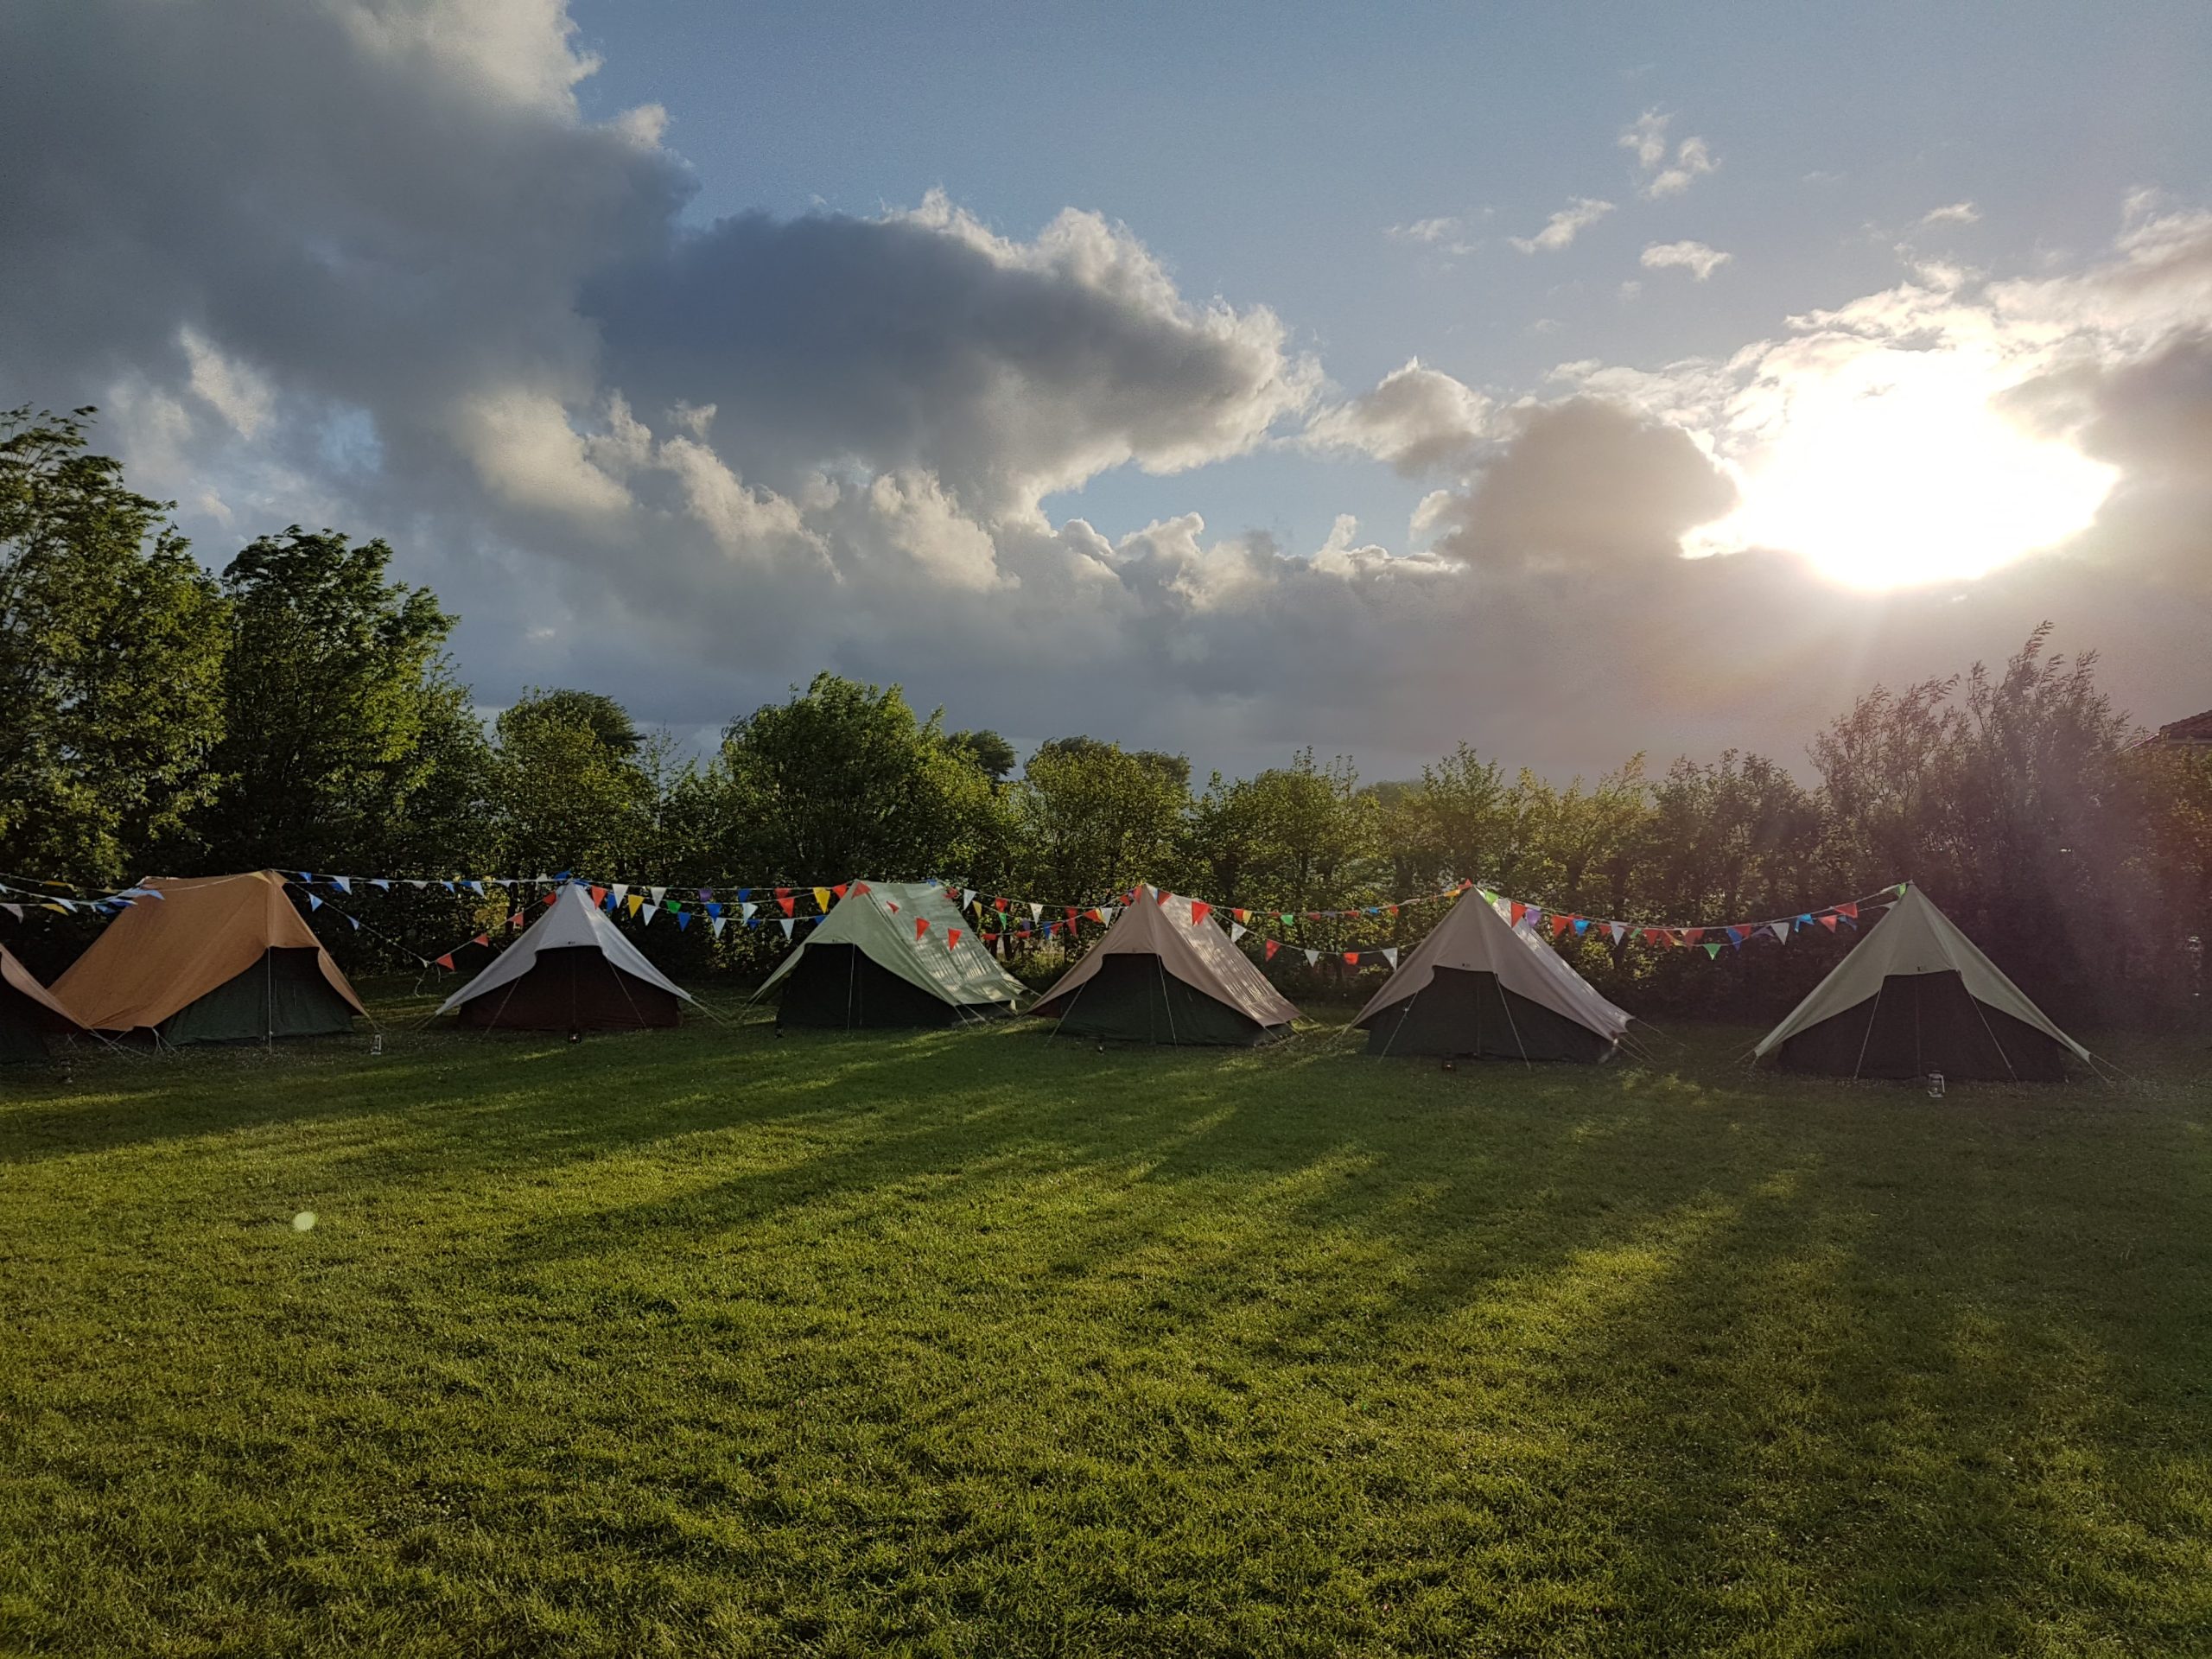 Wopsie Topsie Kinderkamp 2017's new tents